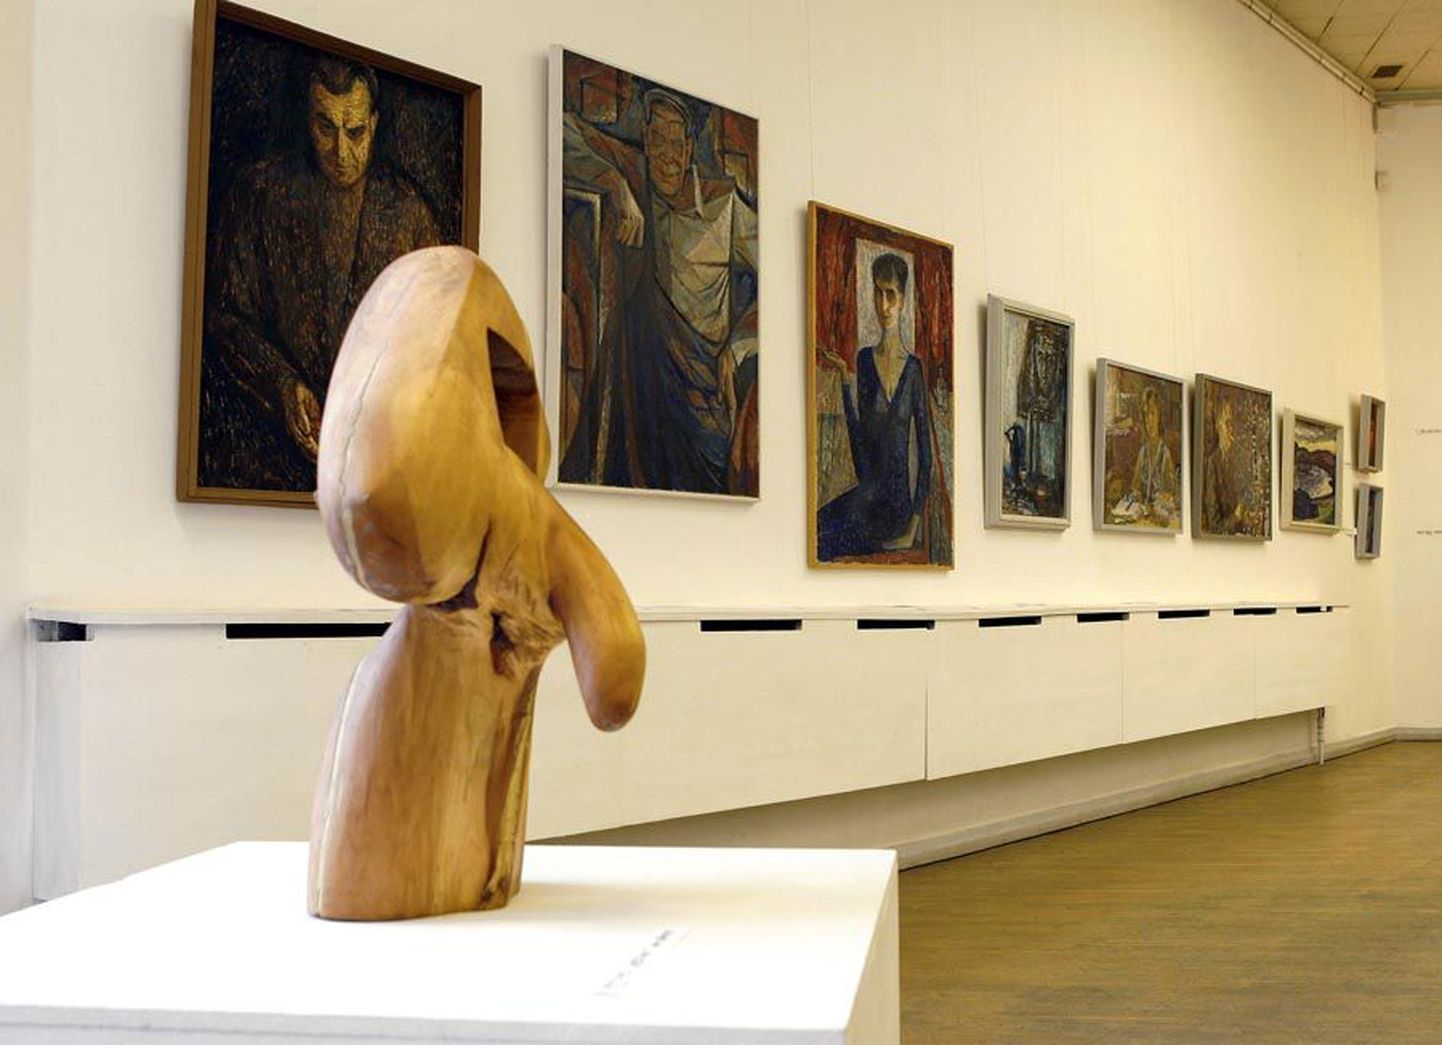 Asjatundjad soovitavad praegu Viljandi kunstisaalis väljas olevat näitust külastada koolinoortel, sest sellel saab tutvuda eri maalitehnikate ja -laadidega.